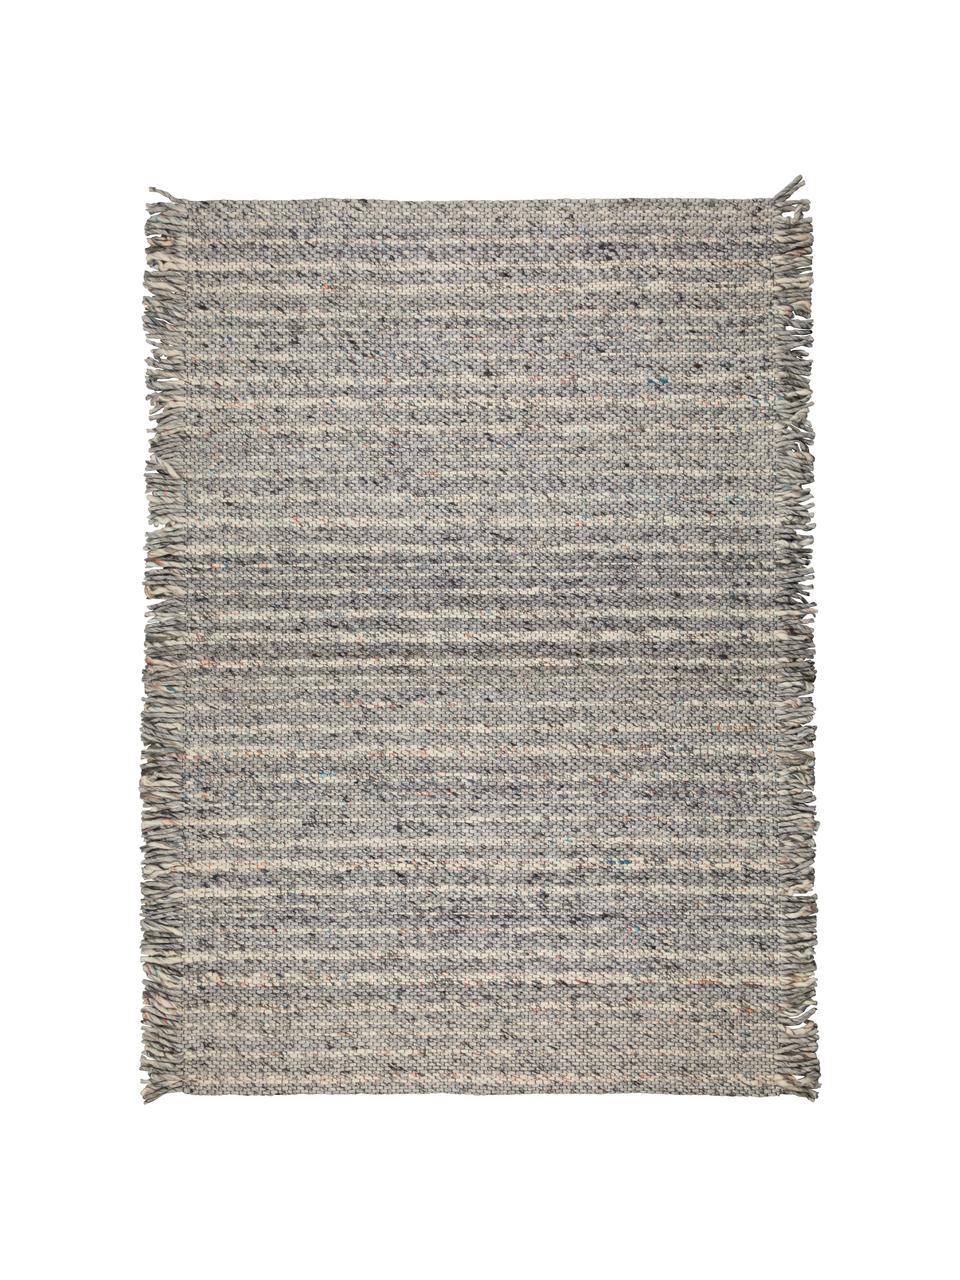 Vlněný koberec s třásněmi Frills, 170 x 240 cm, Odstíny šedé, béžová